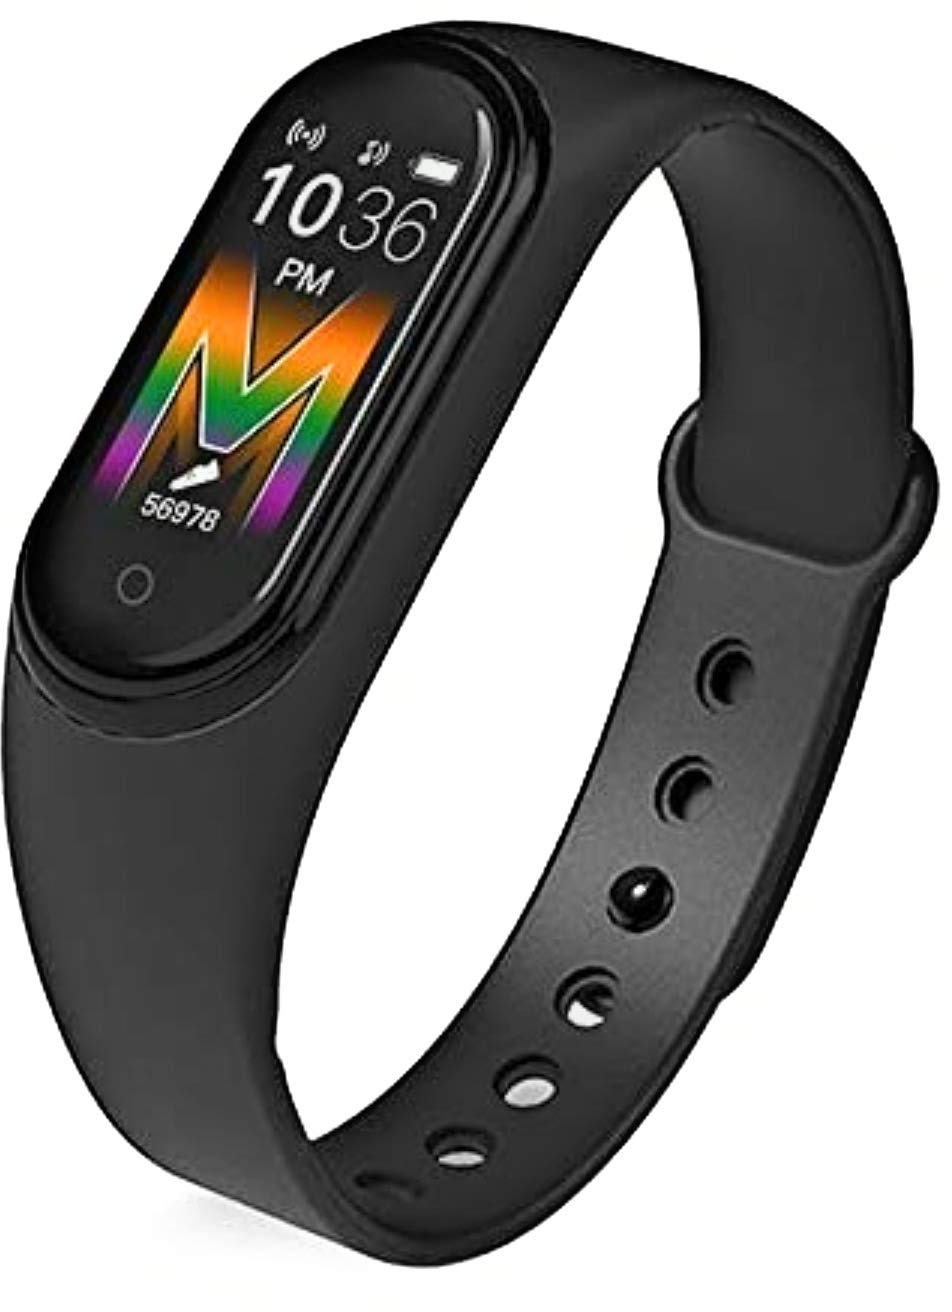 M5 Smart Band Fitness Tracker, Armband, Wasserdicht Uhr Blutdruckmessgerät, Pulsmesser, Schrittzähler Sportarmband Gesundheit Fitness Armband (Schwarz)